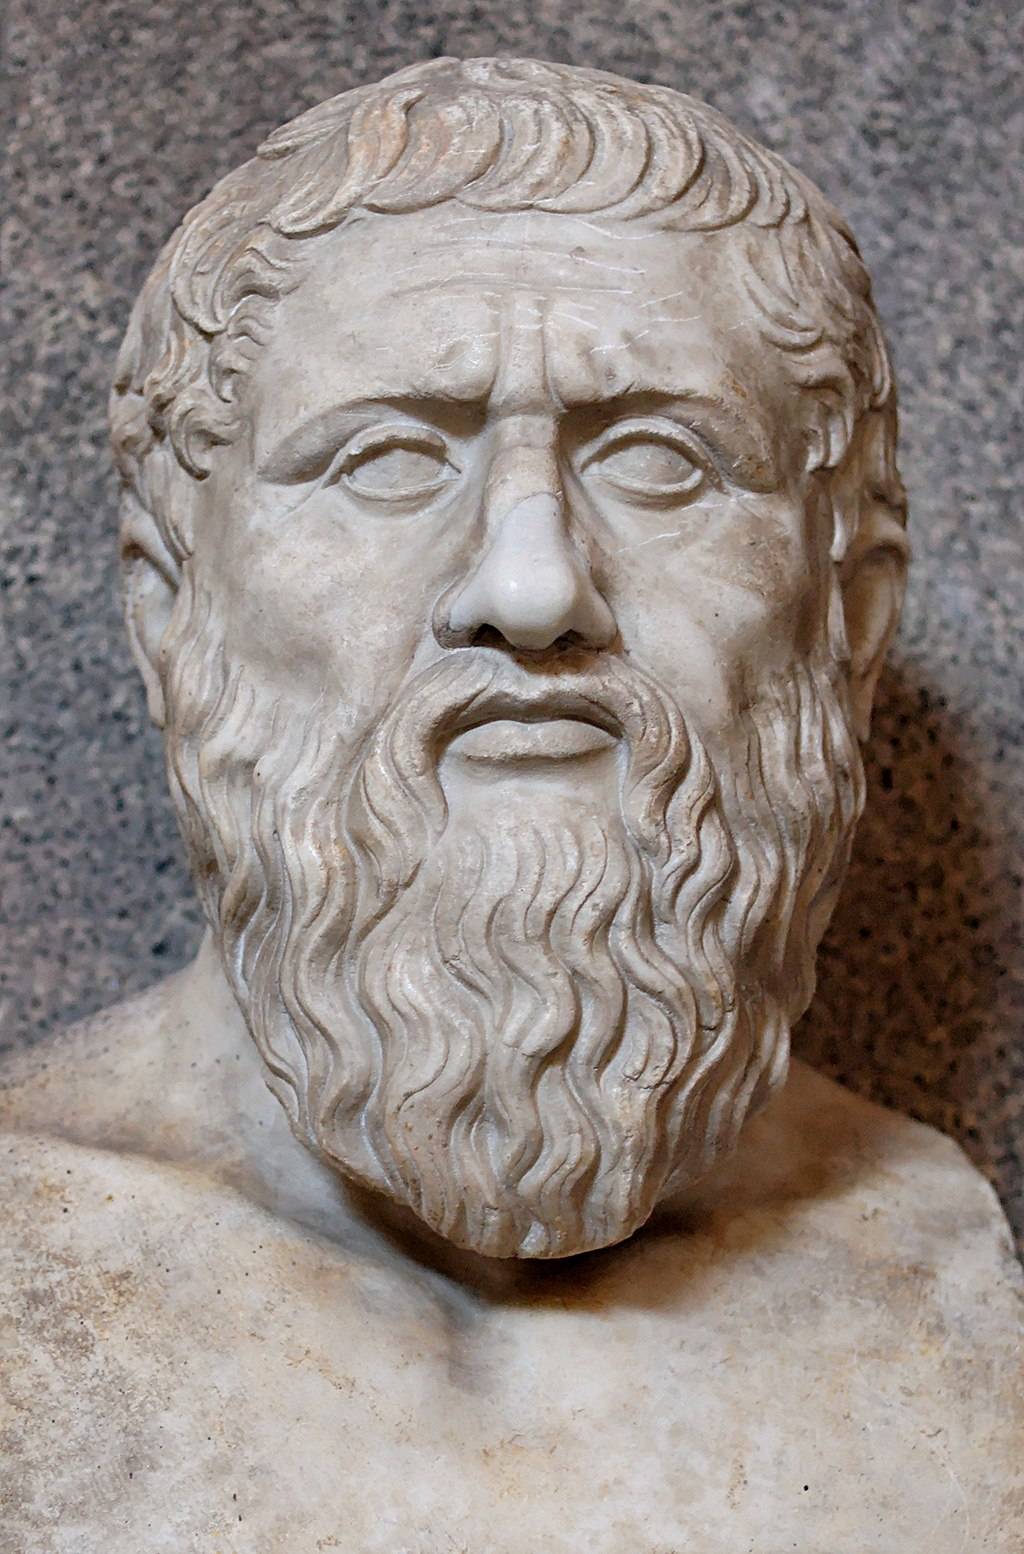 Plato is een van de invloedrijkste filosofen van de geschiedenis